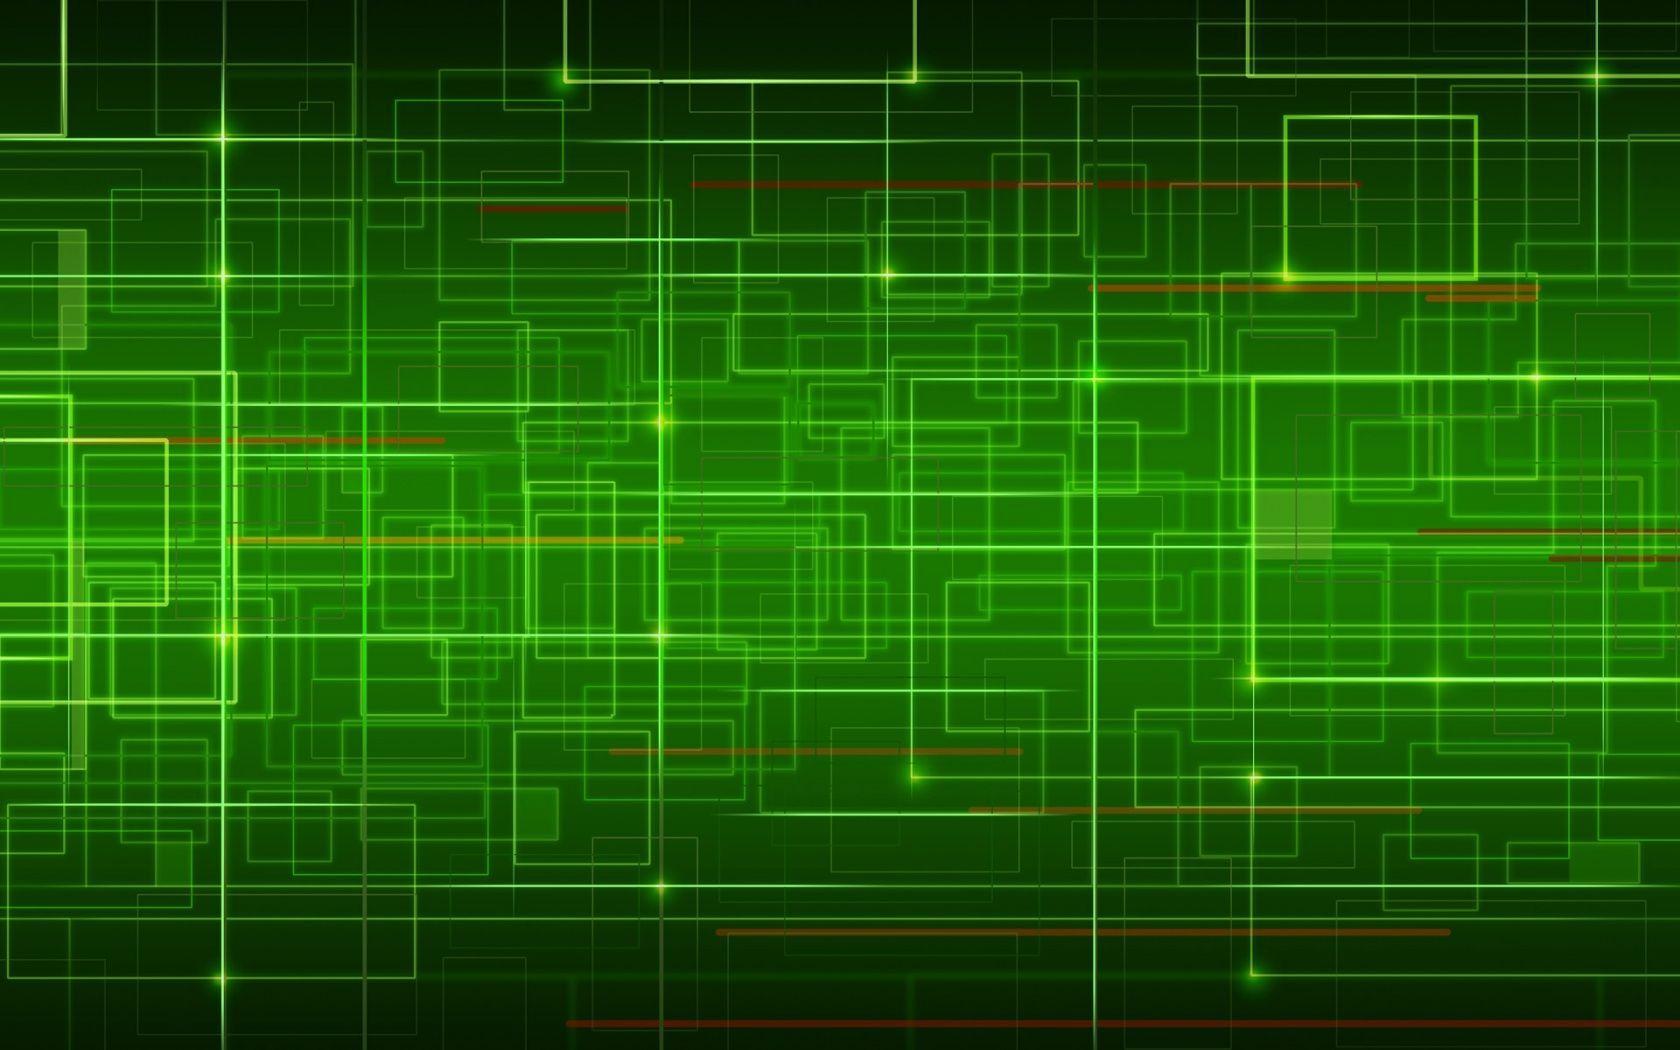 Đằng sau hình nền Green 3D HD Wallpapers chính là một thế giới sống động, đầy màu sắc và không ngừng thay đổi. Với độ phân giải cao và hiệu ứng 3D hấp dẫn, bạn sẽ phải kinh ngạc trước sự tươi trẻ và đầy sức mạnh của màu xanh lá trong các bức hình nền này.